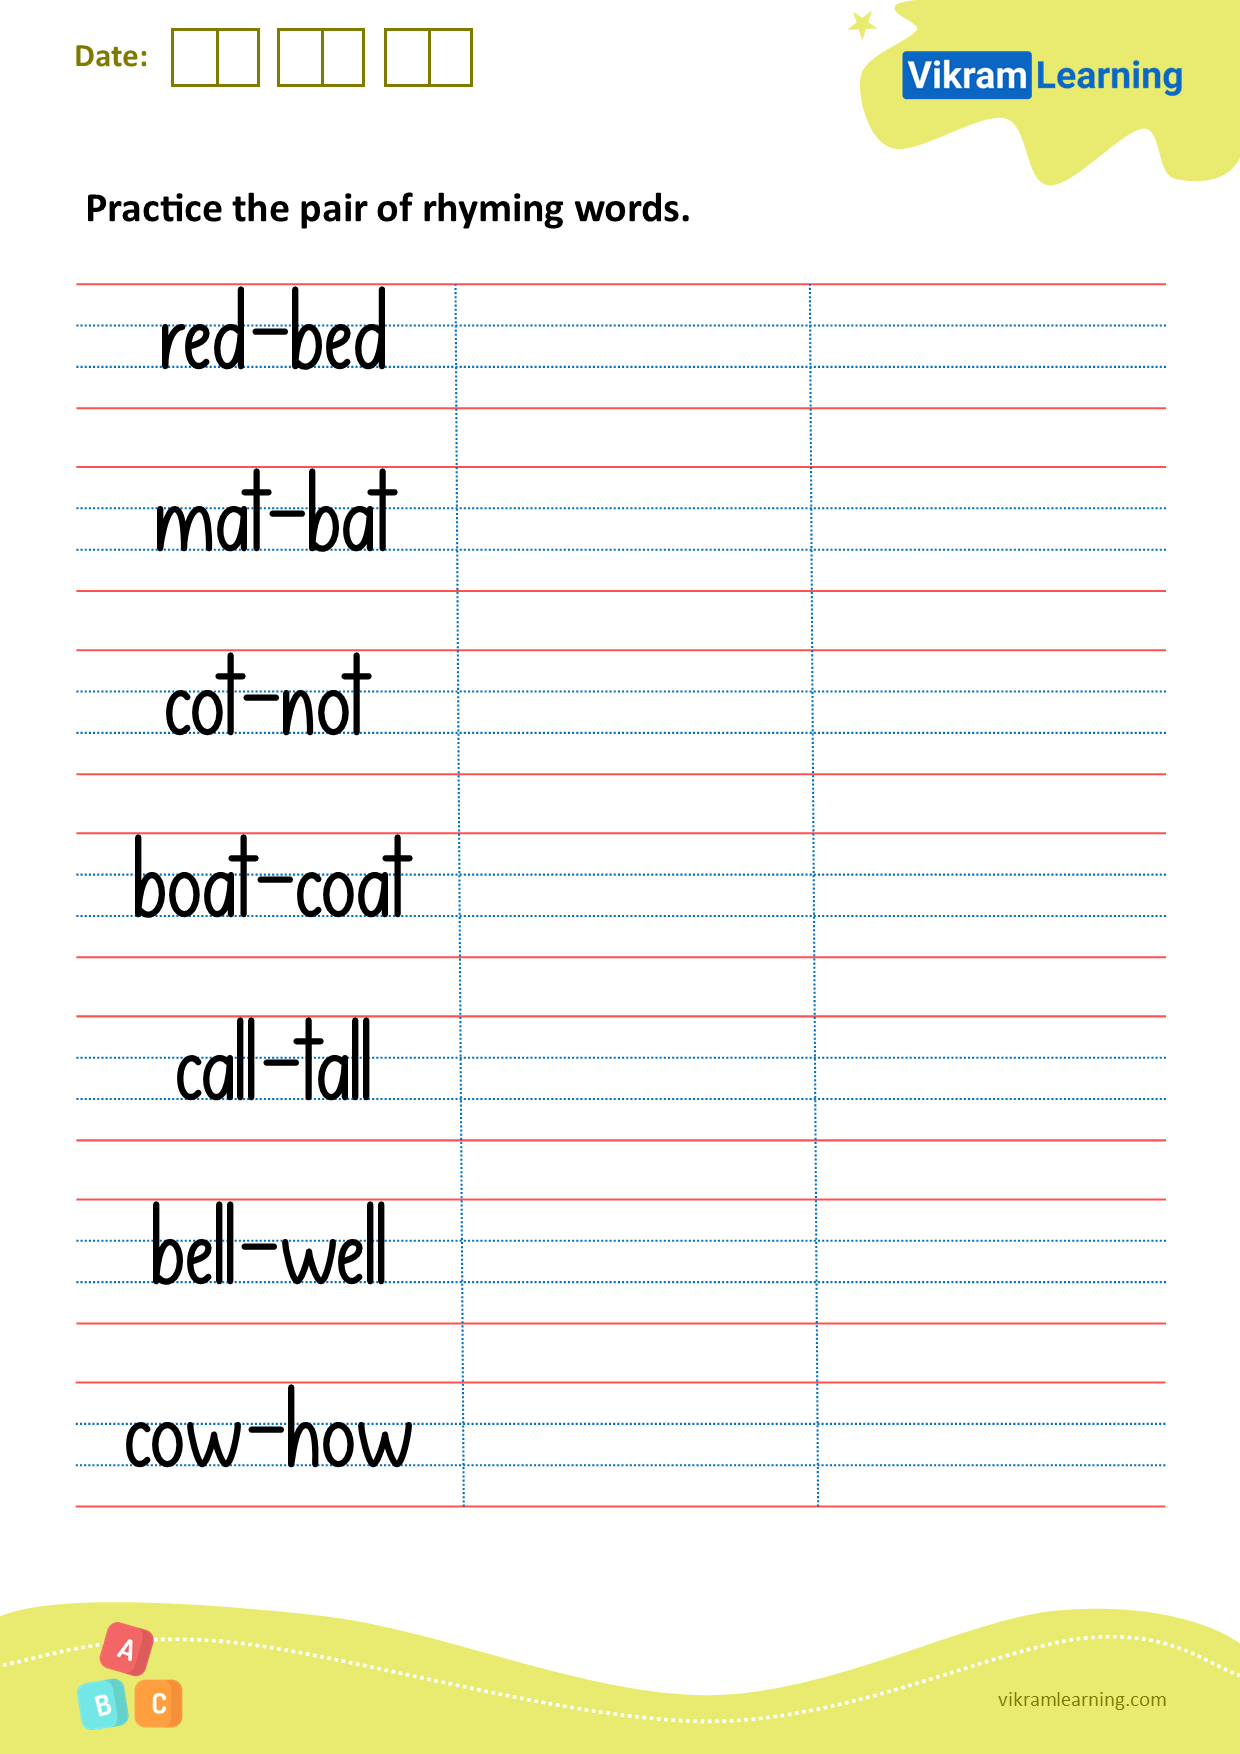 Download practice the pair of rhyming words worksheets